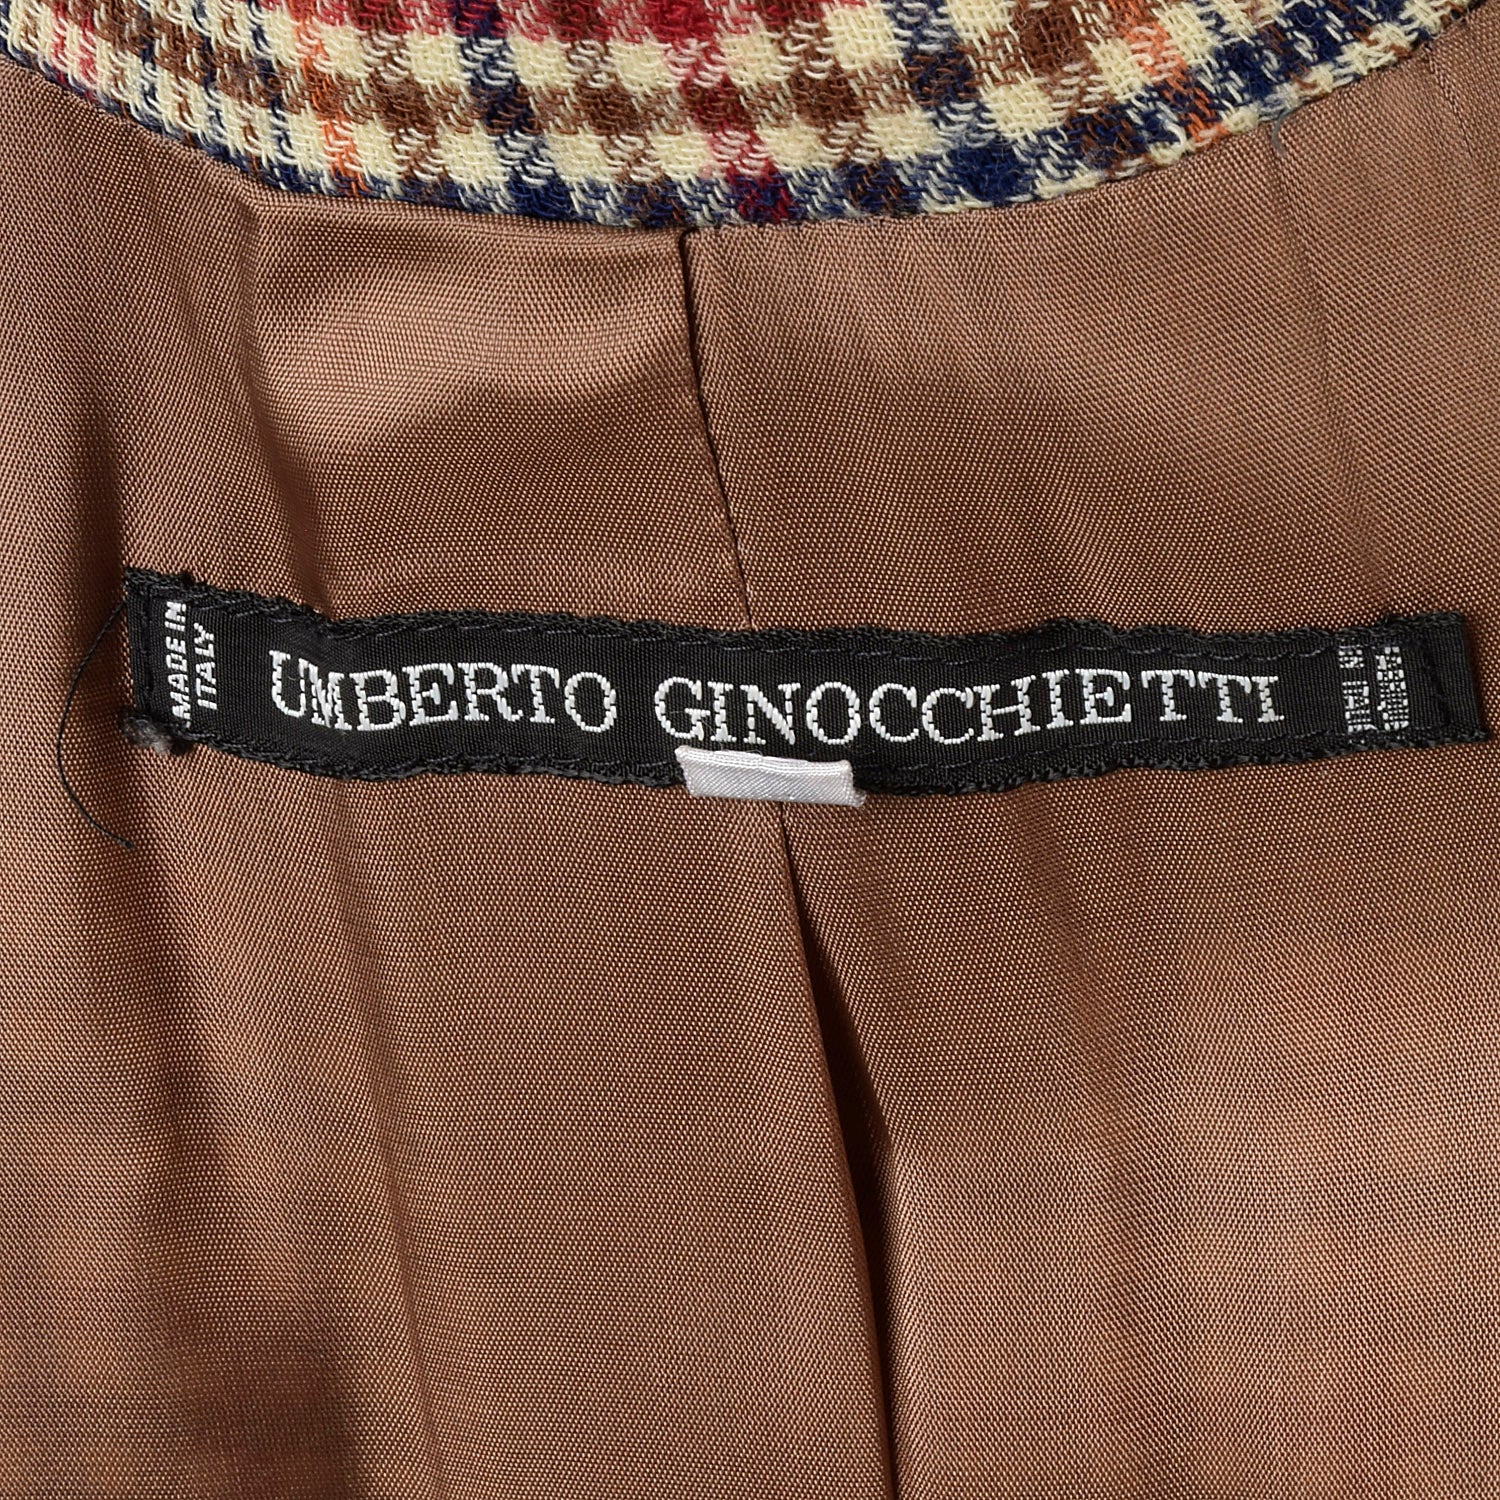 Small Umberto Ginocchietti 1970s Plaid Jacket with Velvet Trim